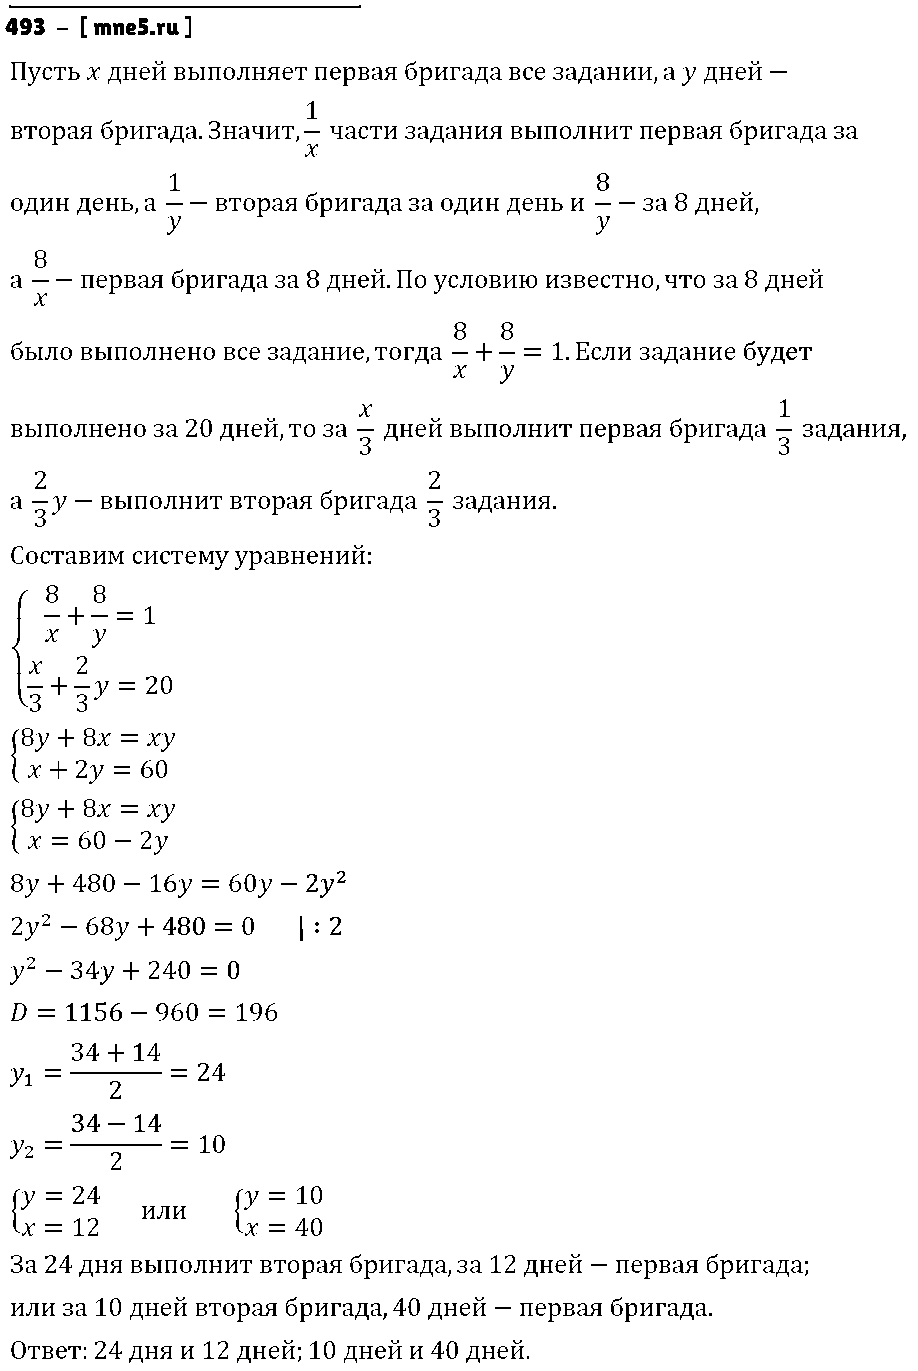 ГДЗ Алгебра 9 класс - 493